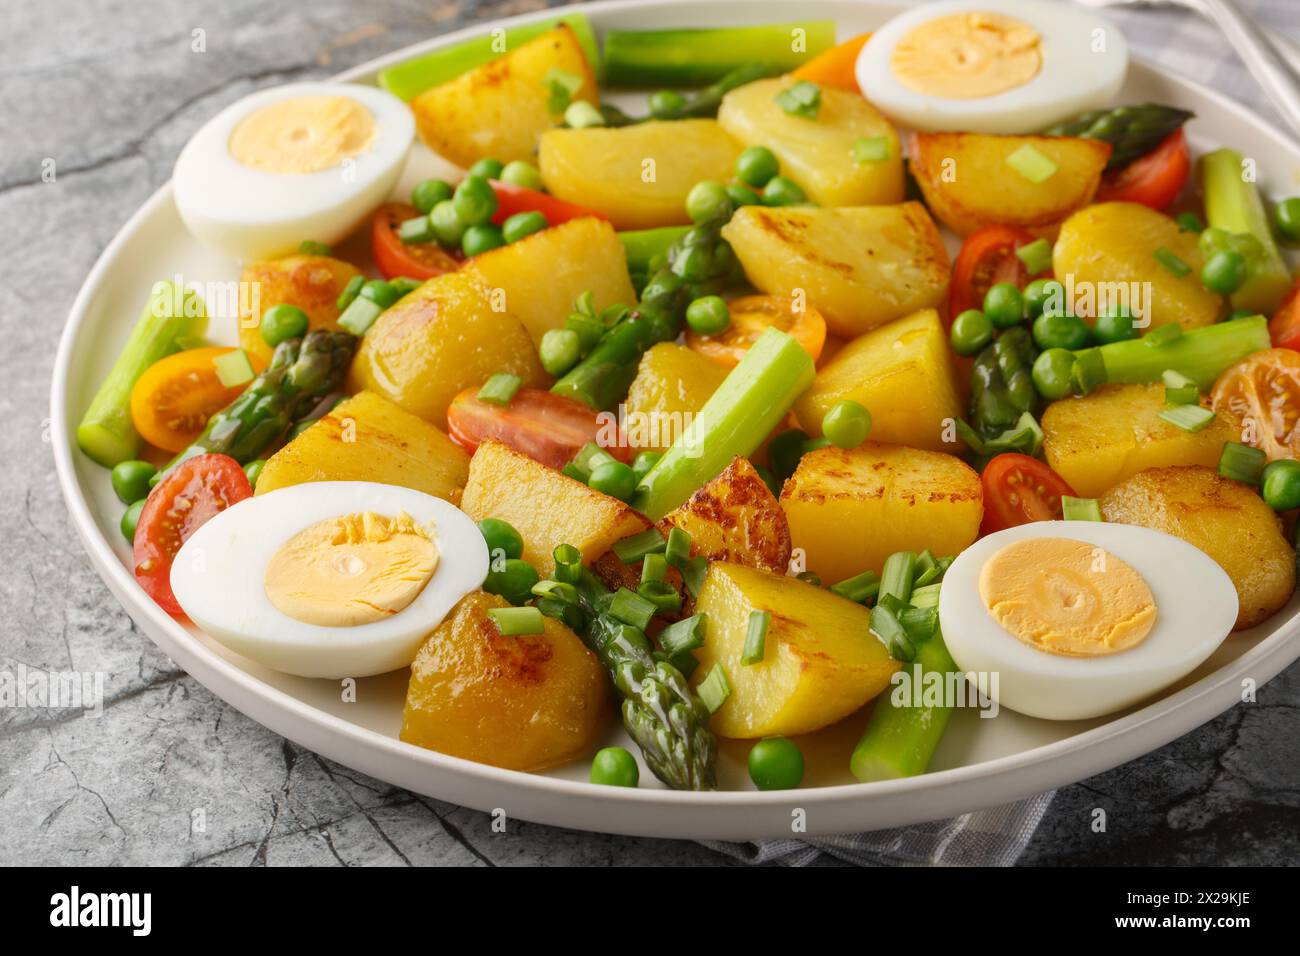 Salade avec pommes de terre rôties, asperges, oeuf dur, tomate et petits pois gros plan sur l'assiette sur la table. Horizontal Banque D'Images